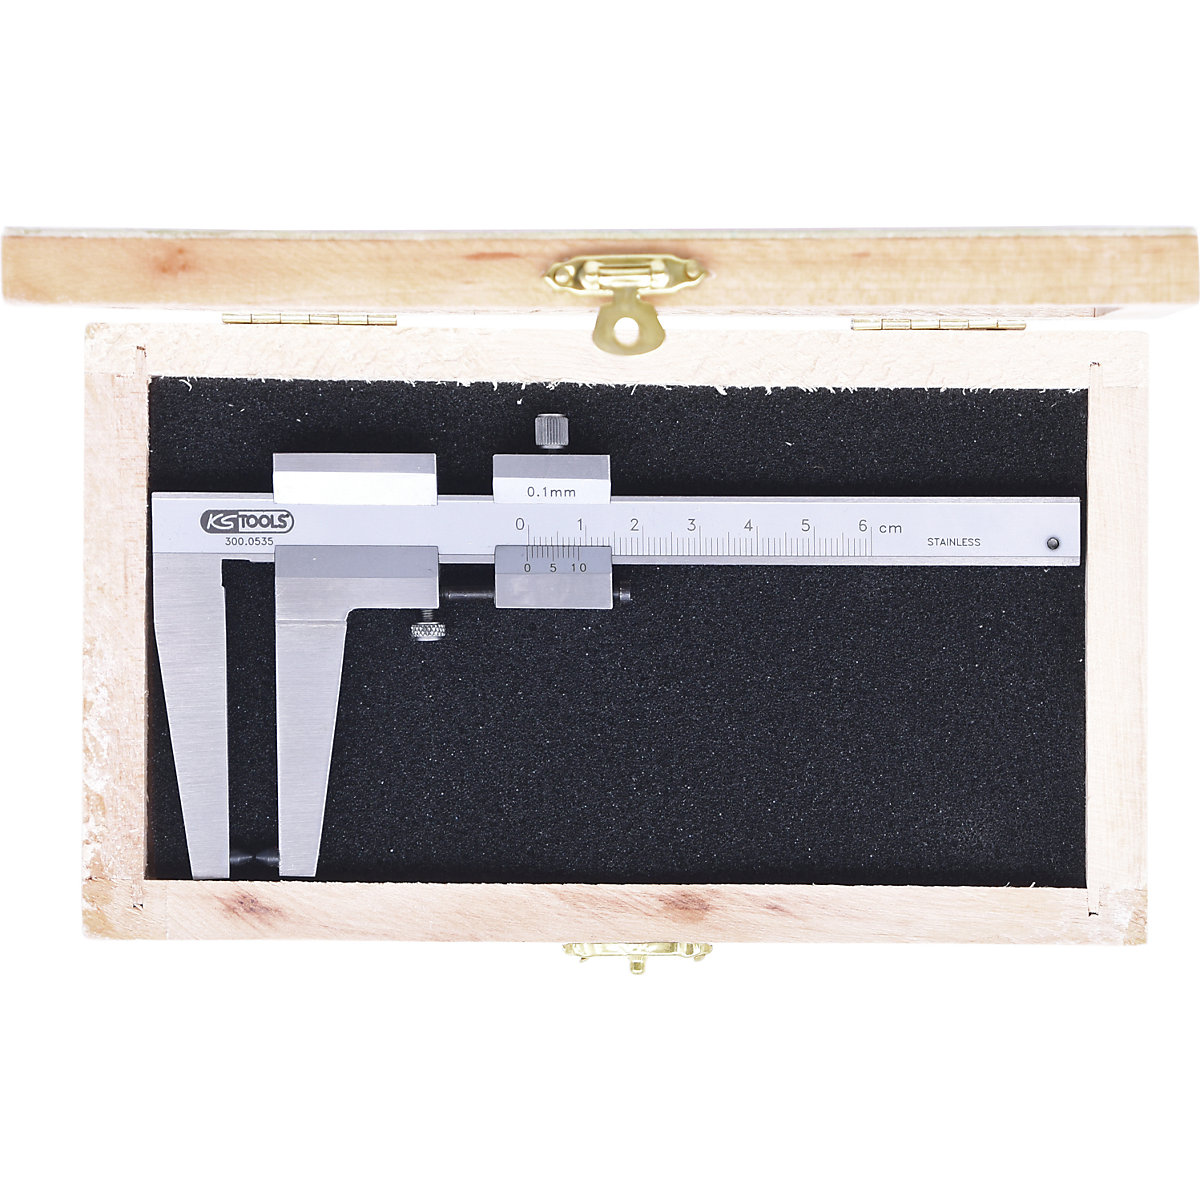 Pomično merilo za merjenje debeline zavornega diska – KS Tools (Slika izdelka 2)-1